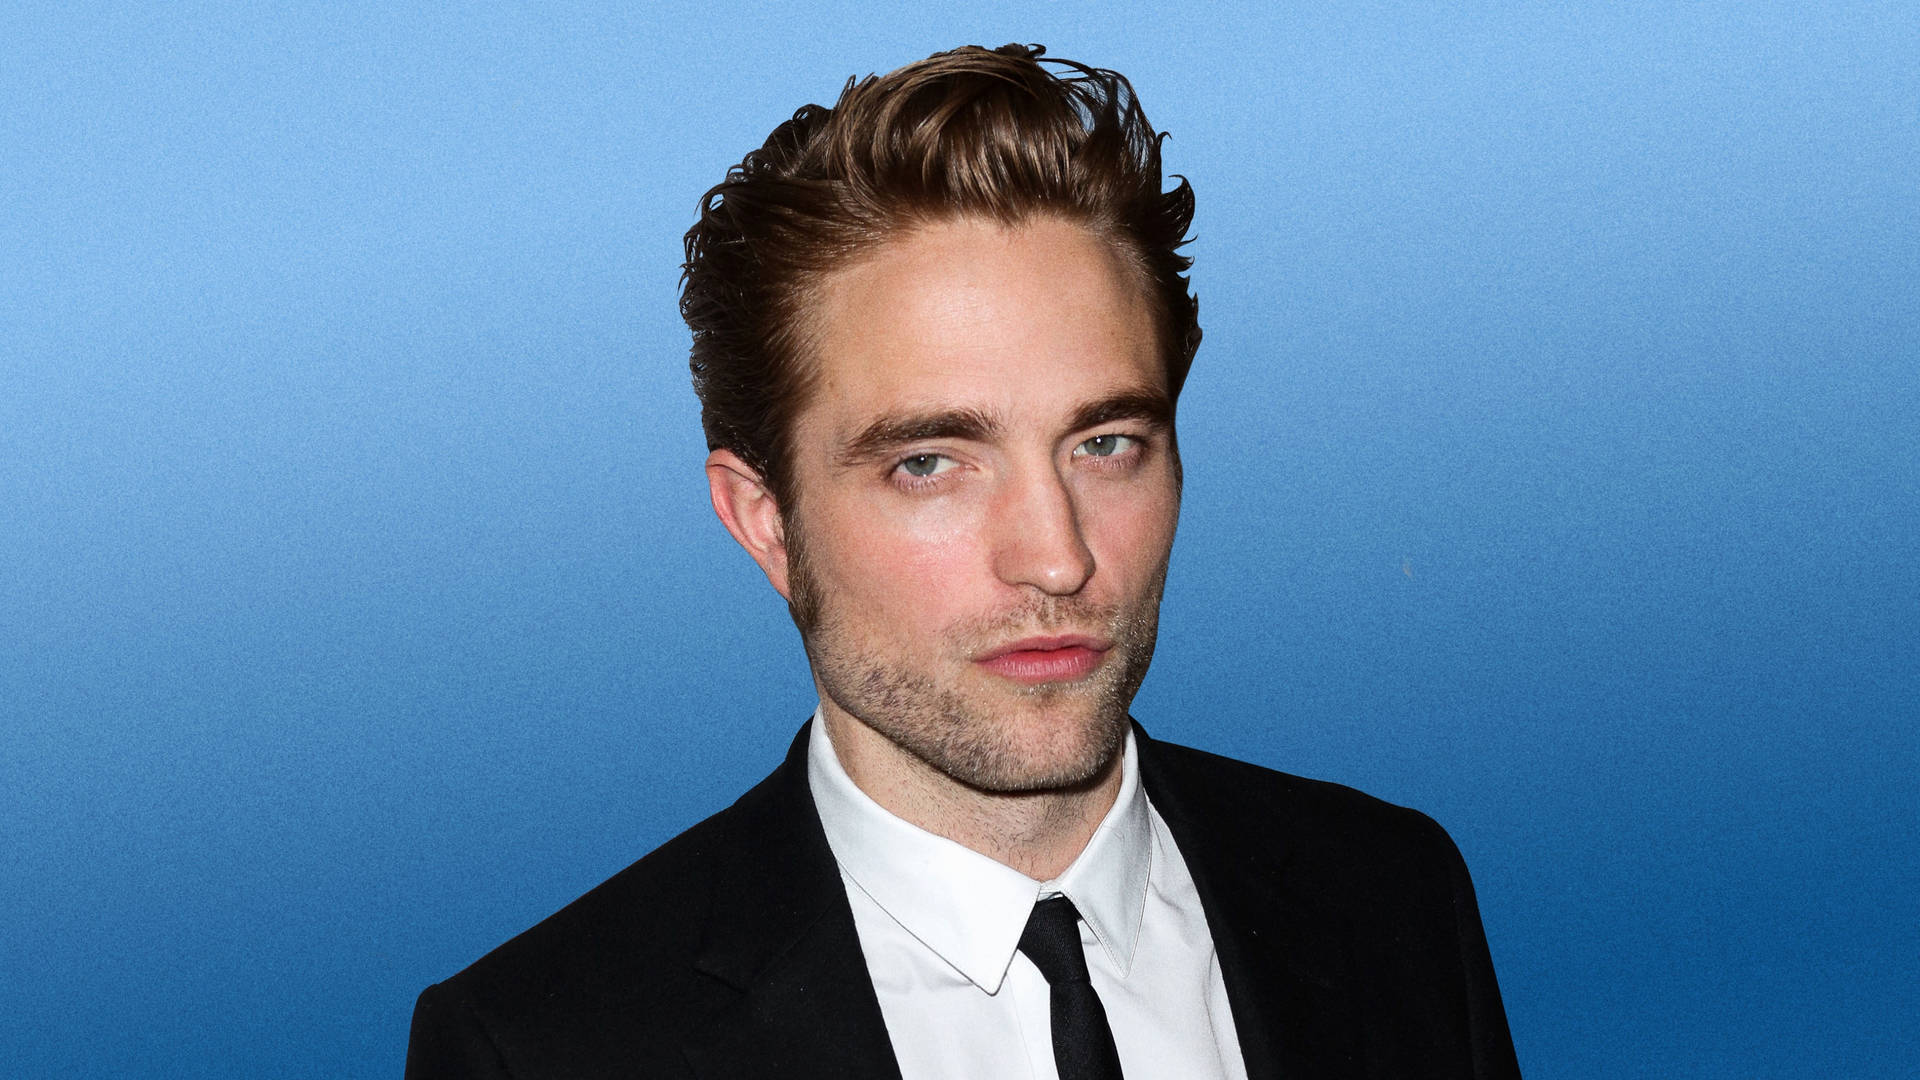 Robert Pattinson In Suit